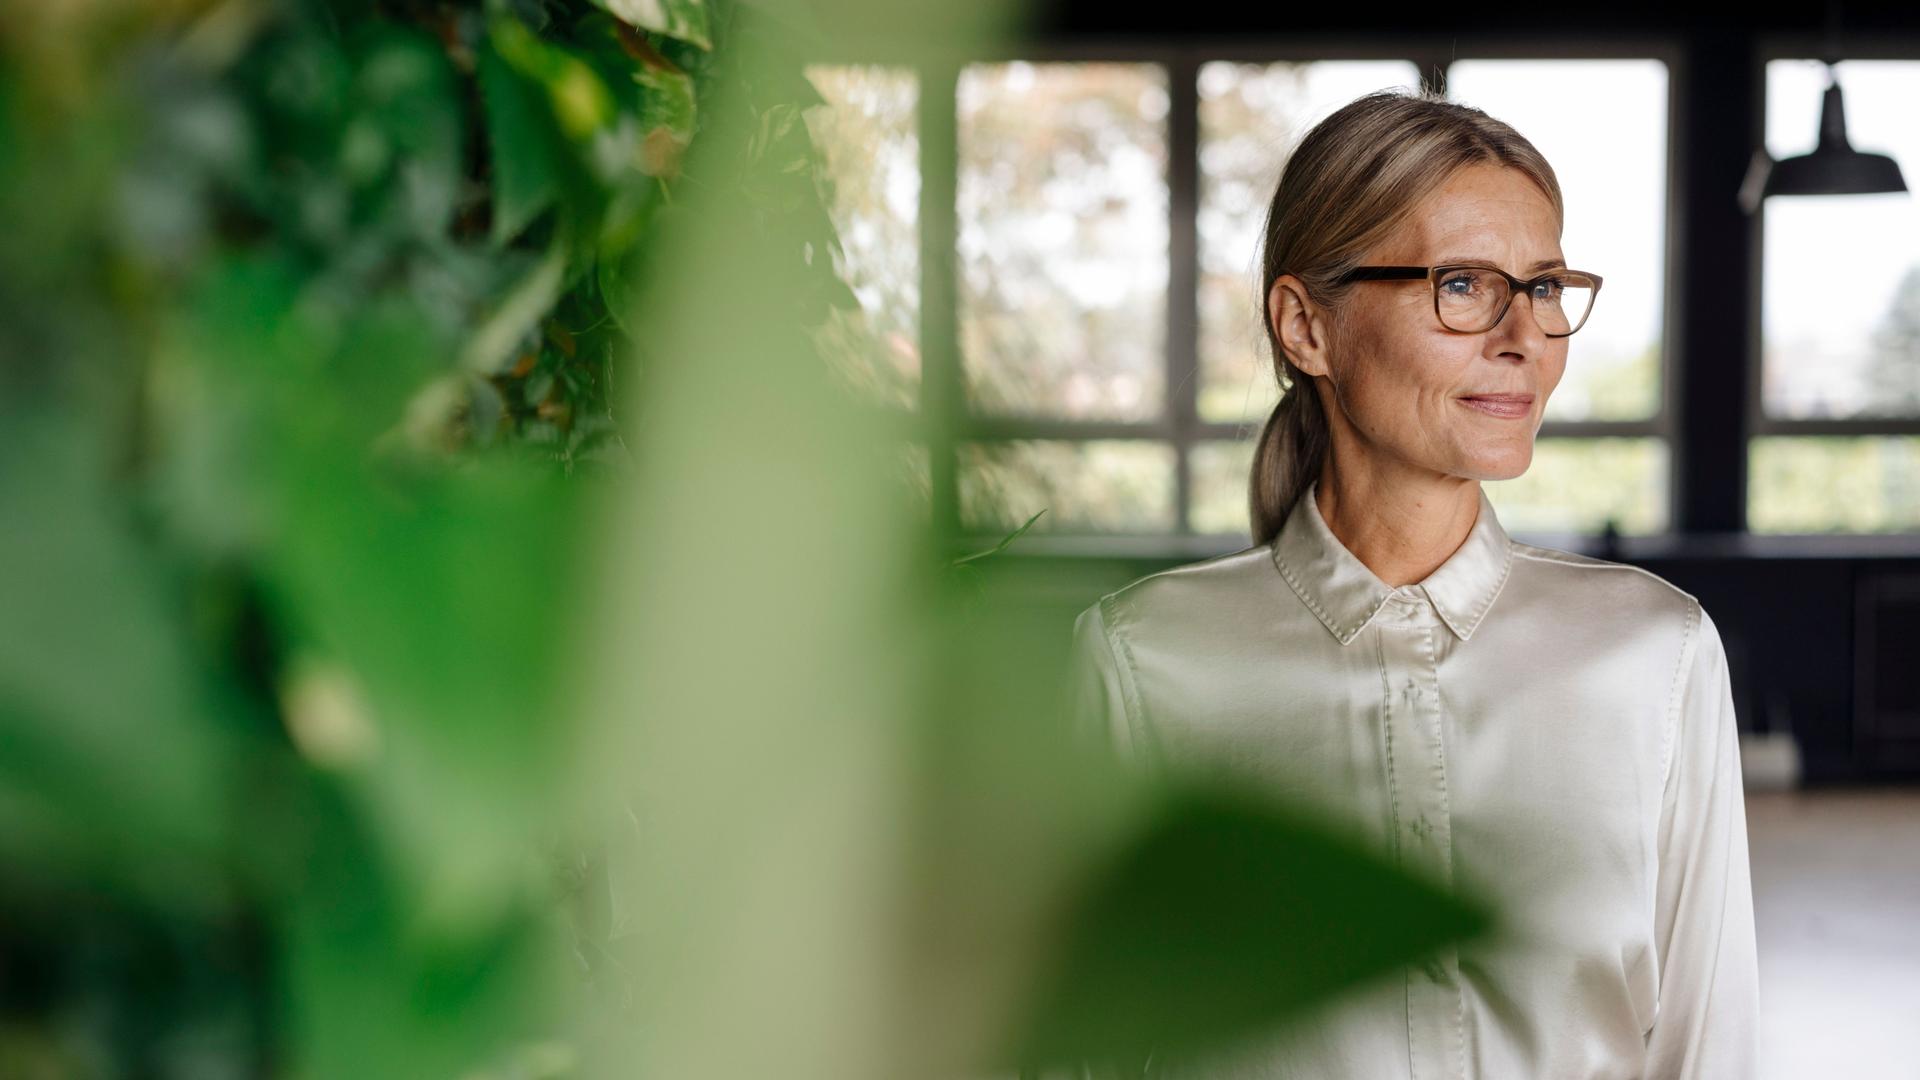 Lächelnde mittelalte Frau mit Brille und schicker Bluse im Büro guckt zur Seite. Im Vordergrund sind grüne Pflanzen.